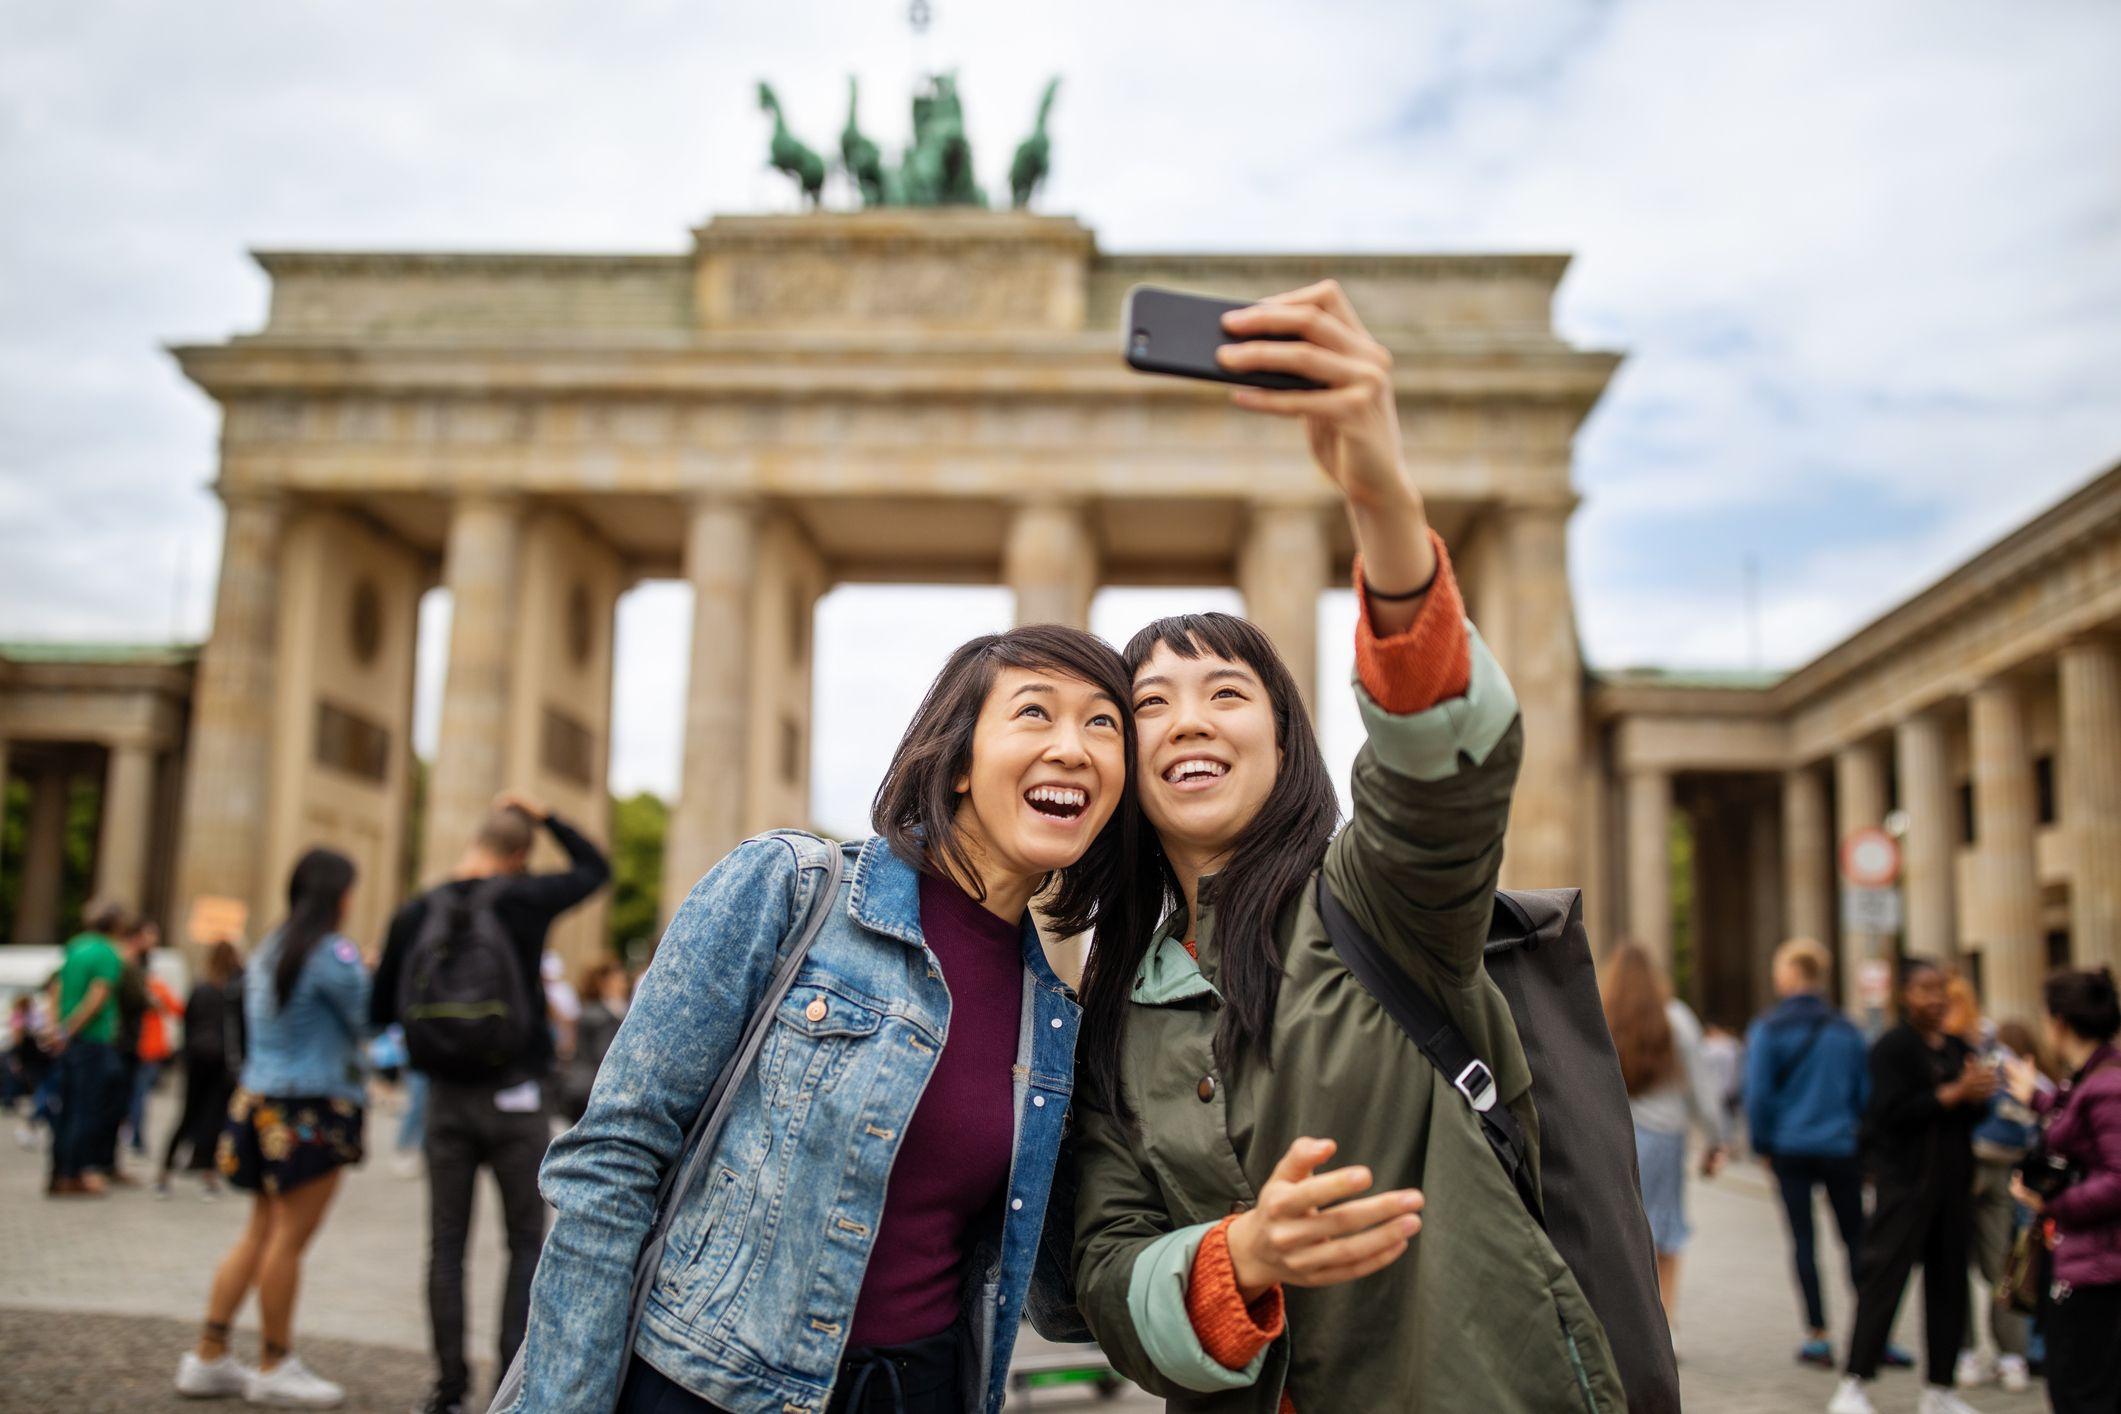 mengapa 'selfie' di berlin, ibu kota jerman, dianggap aneh dan egois?